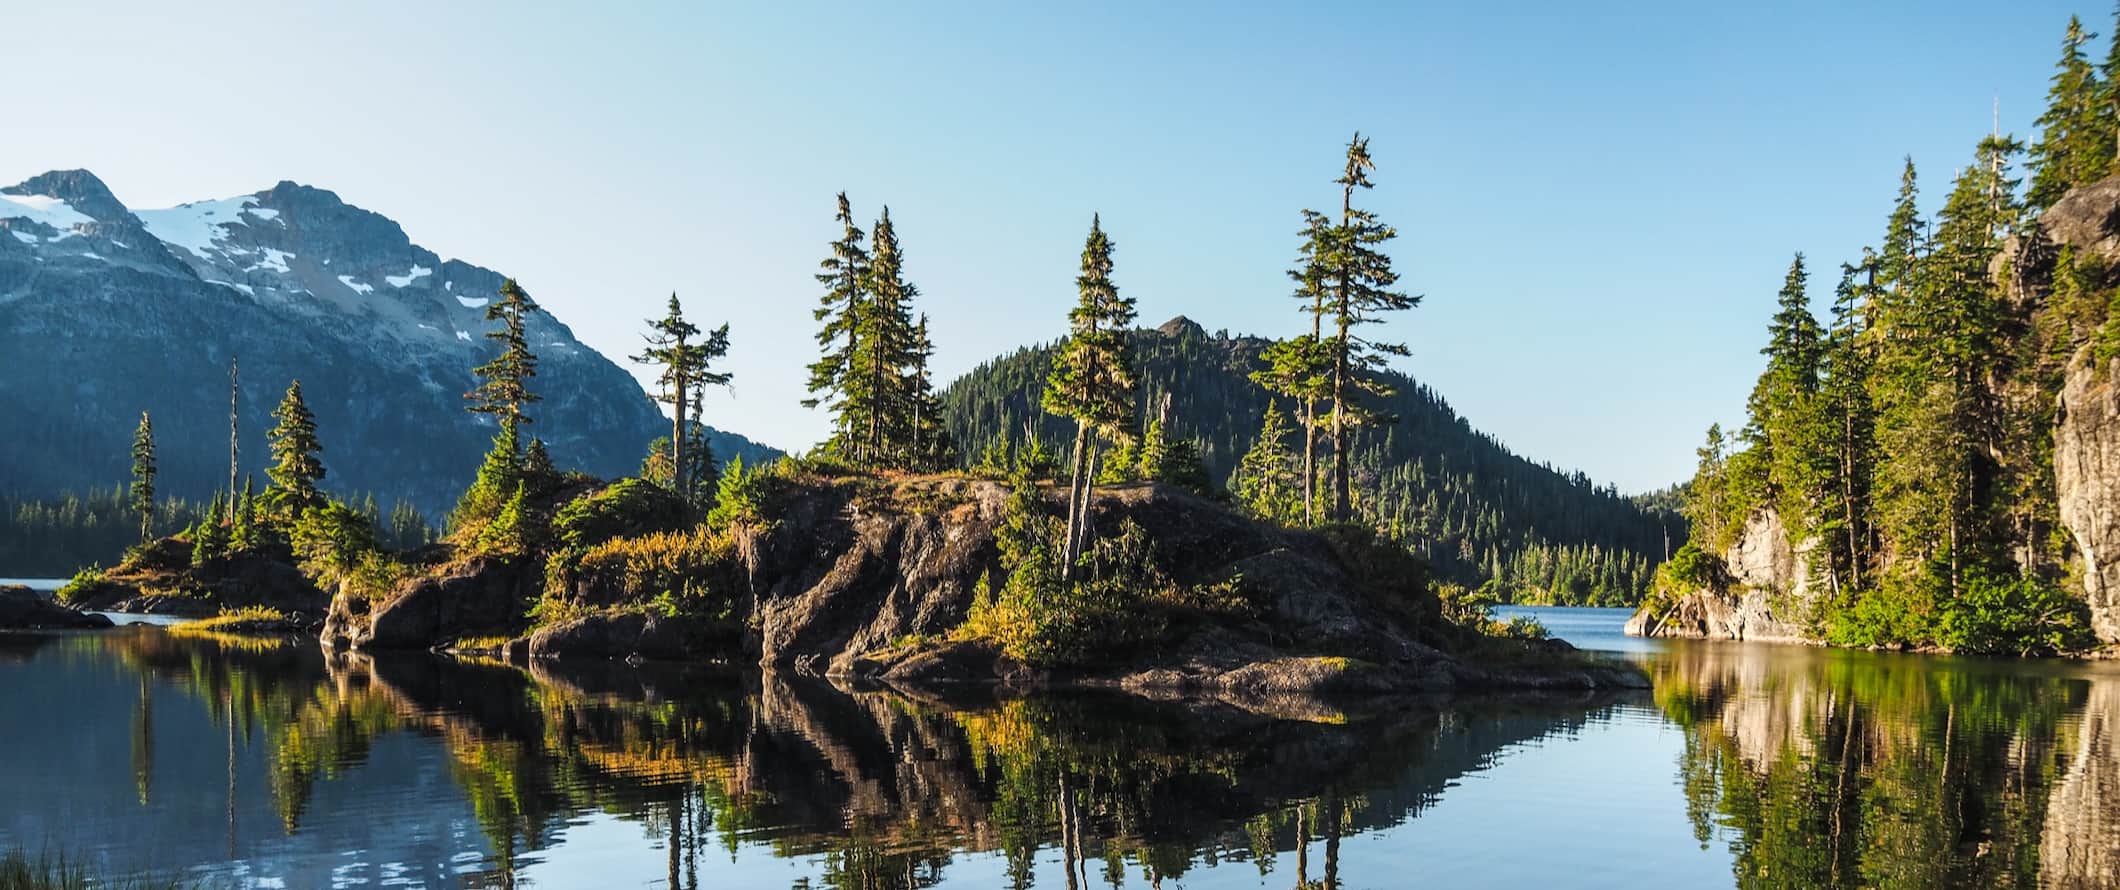 Paisagem florestal deslumbrante ao lado do lago na bela ilha de Vancouver, Canadá